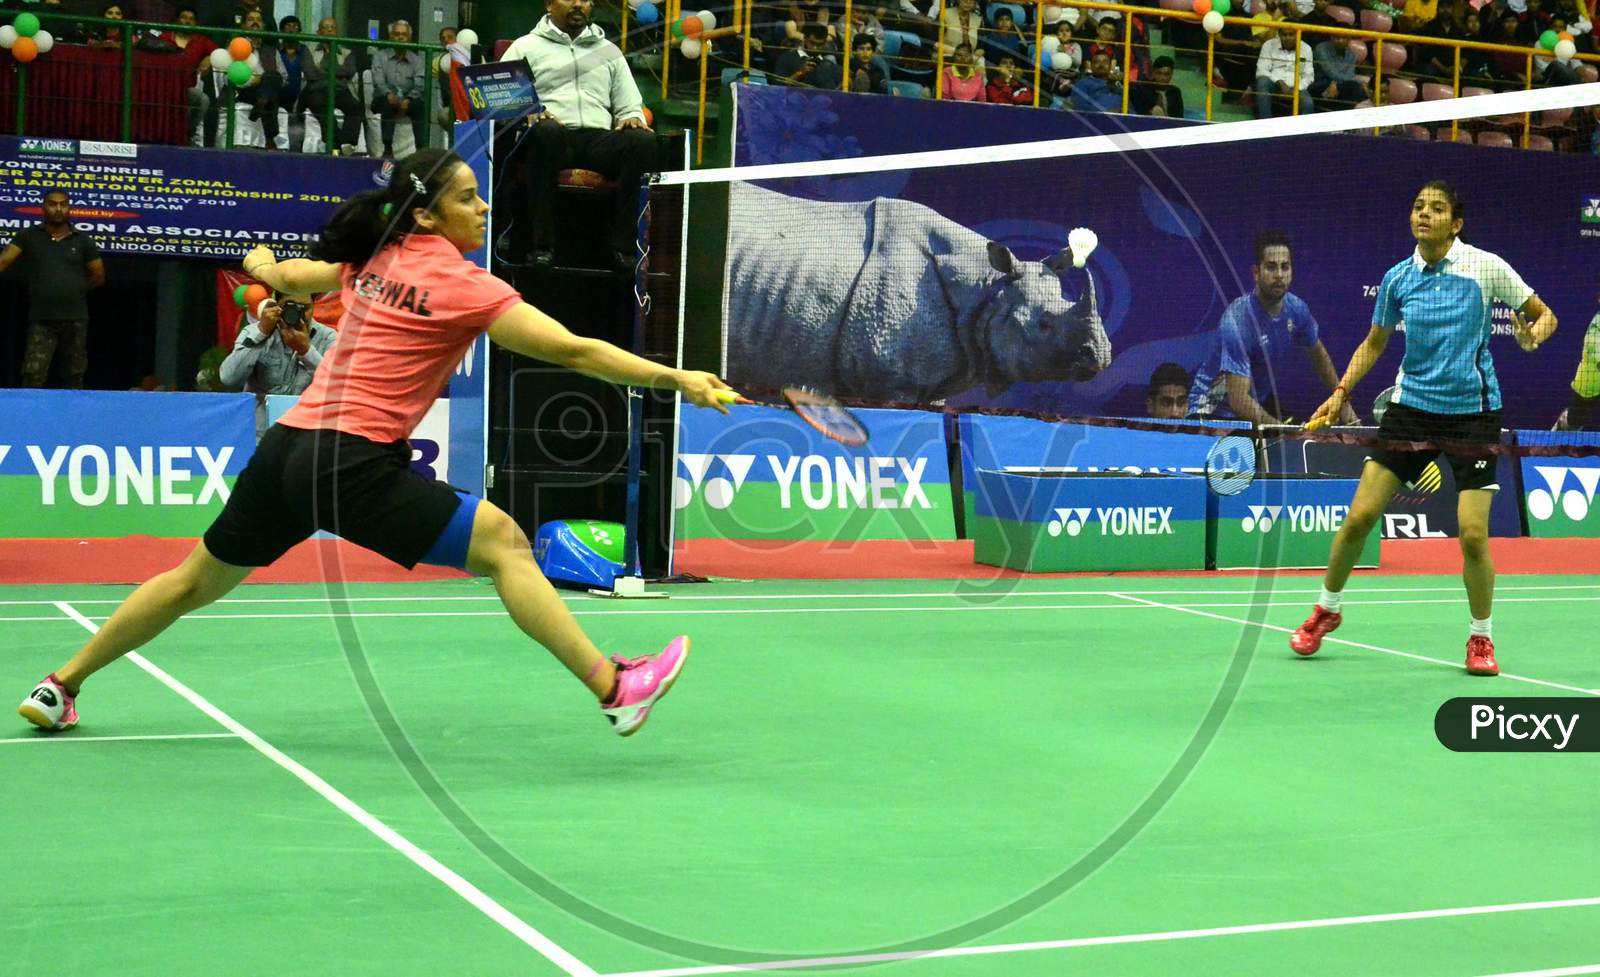 Badminton player Saina Nehwal